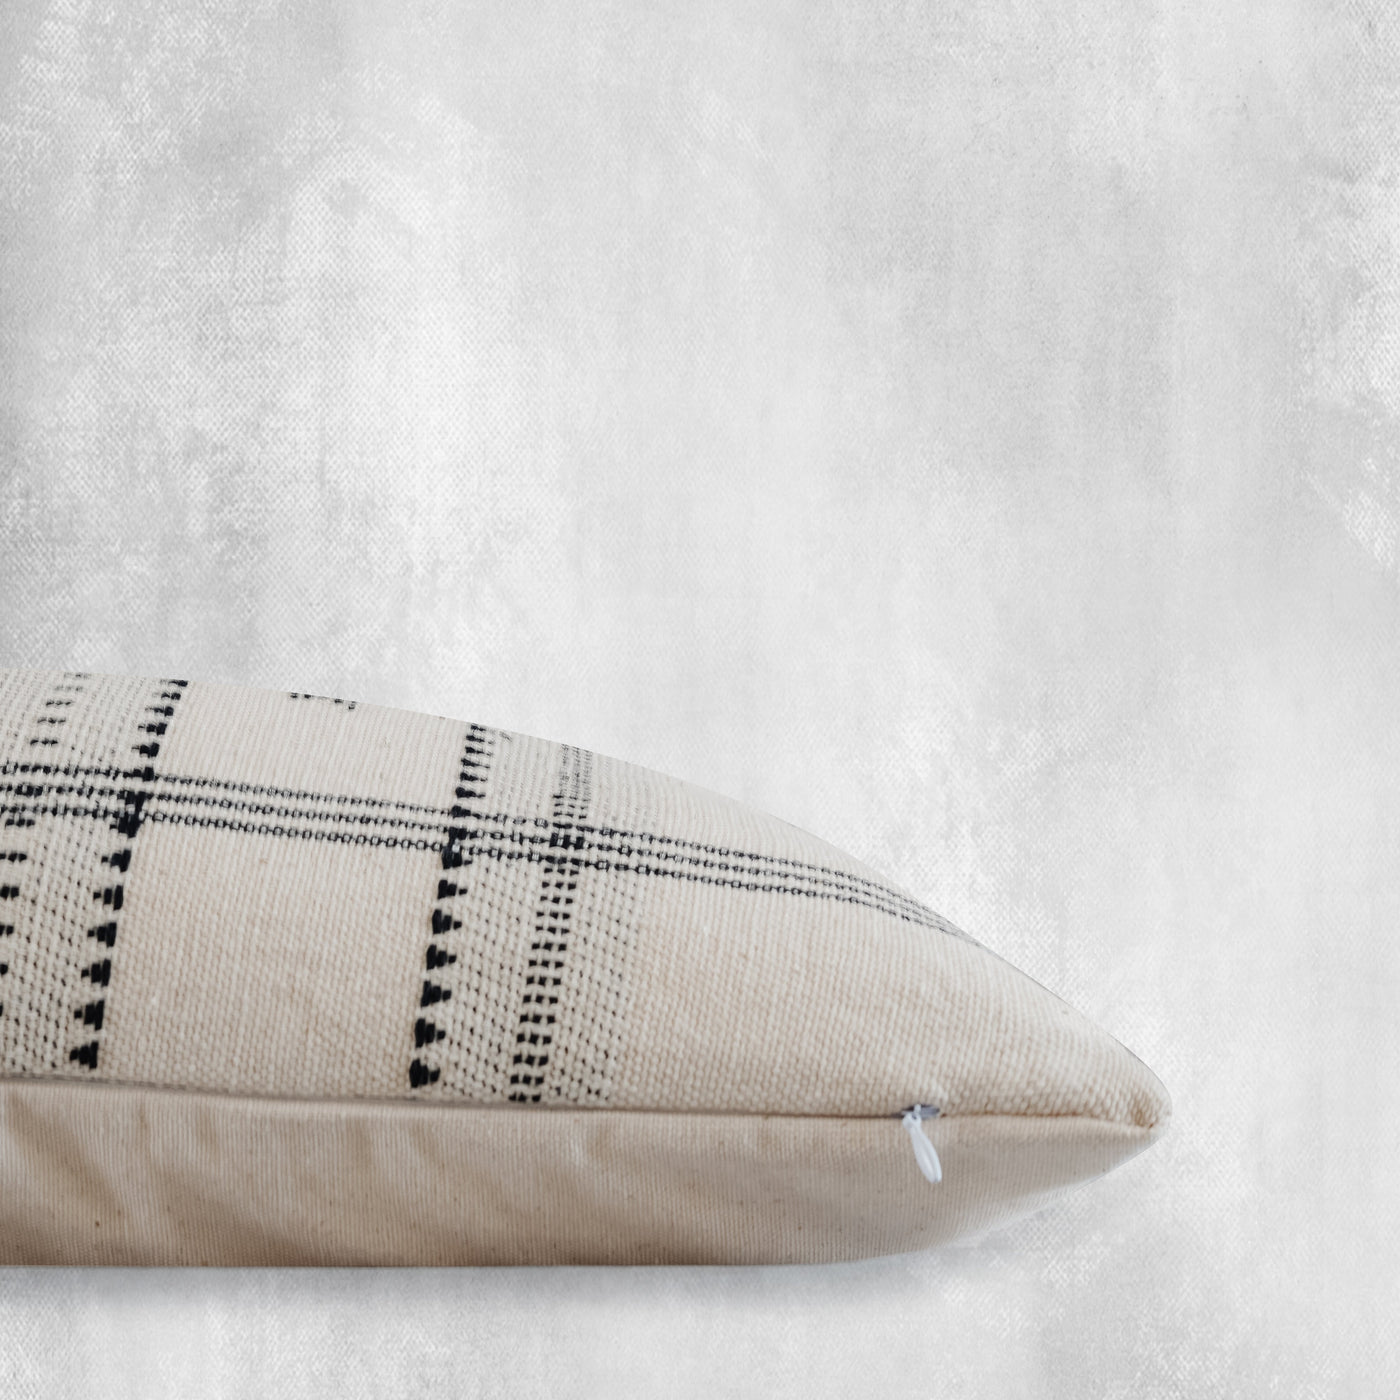 EKUNDAYO- Woven Cotton Throw Pillow Cover